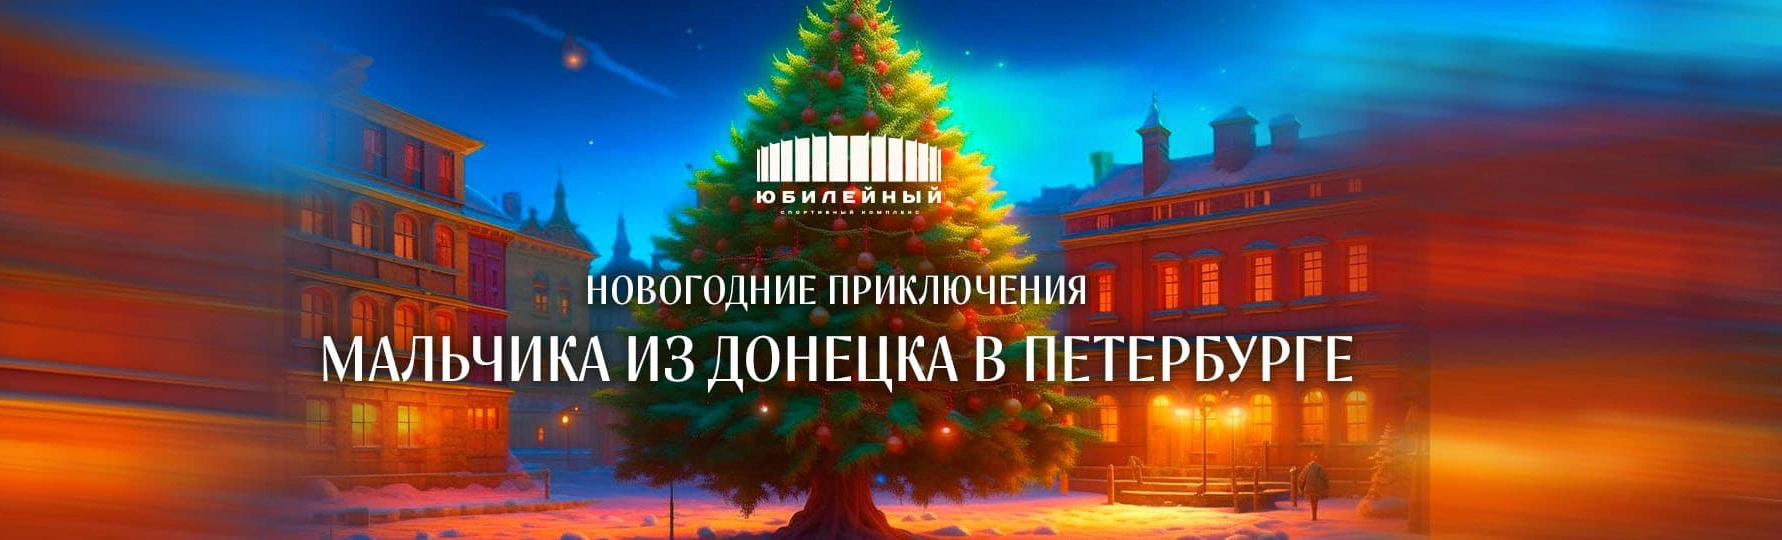 Волшебные новогодние приключения мальчика из Донецка приближаются к Санкт-Петербургу, и вы можете стать частью этой удивительной истории!